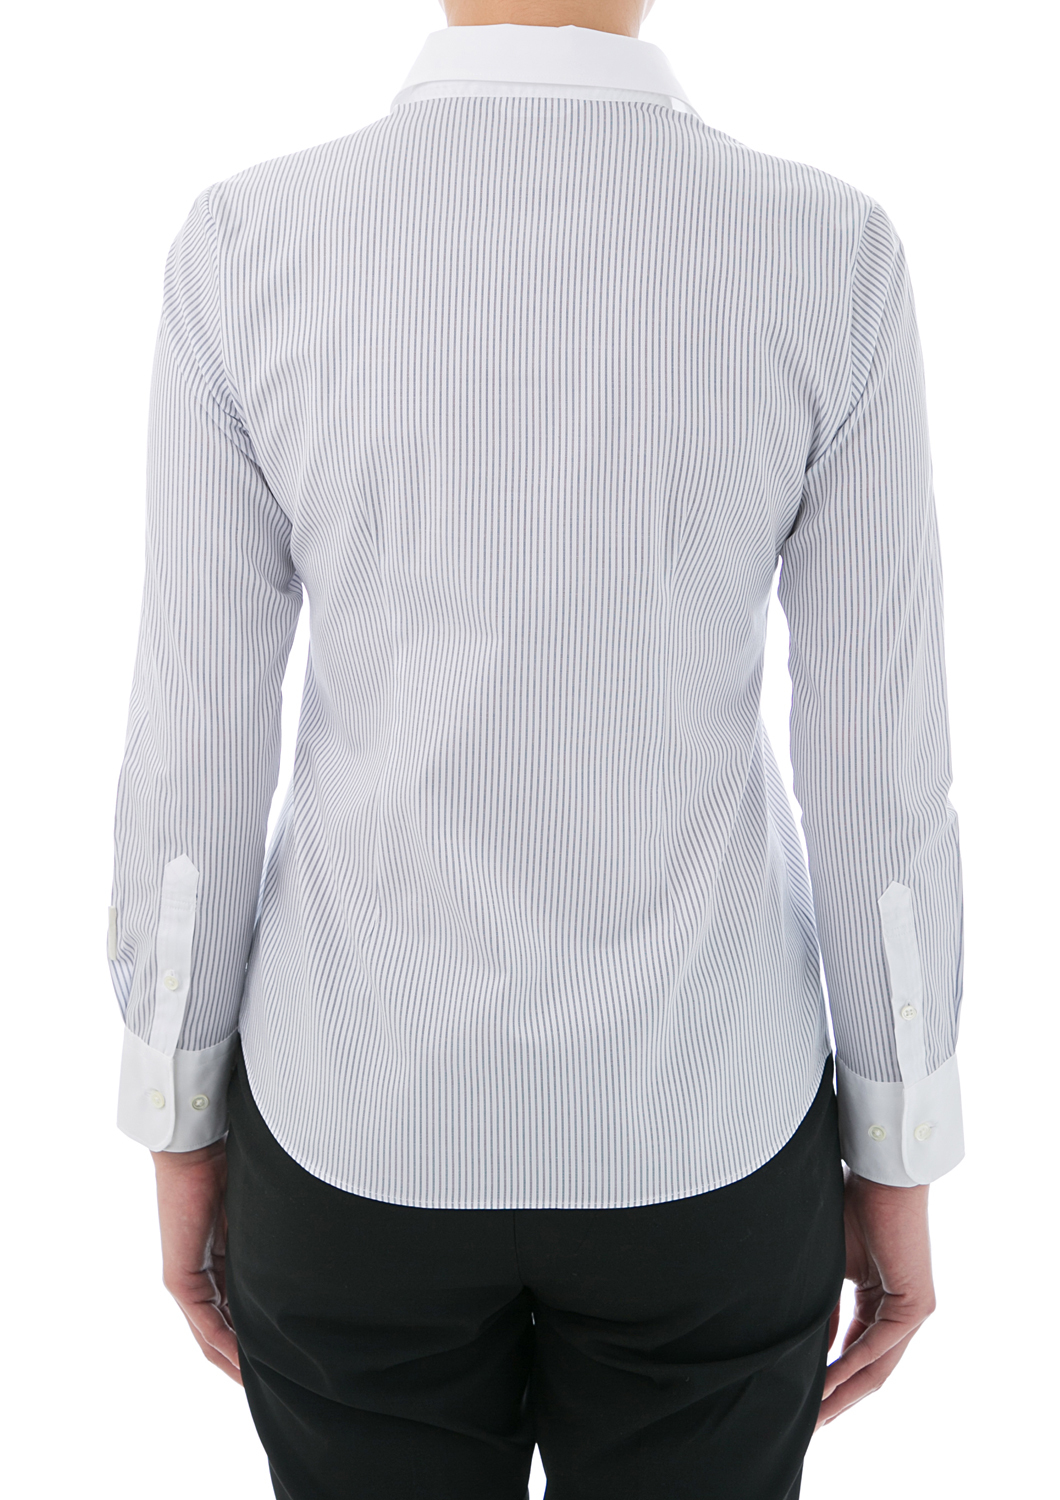 (Premium) Non-iron Cotton Shirt/100% Cotton/ Wrinkle-free/ Collared White